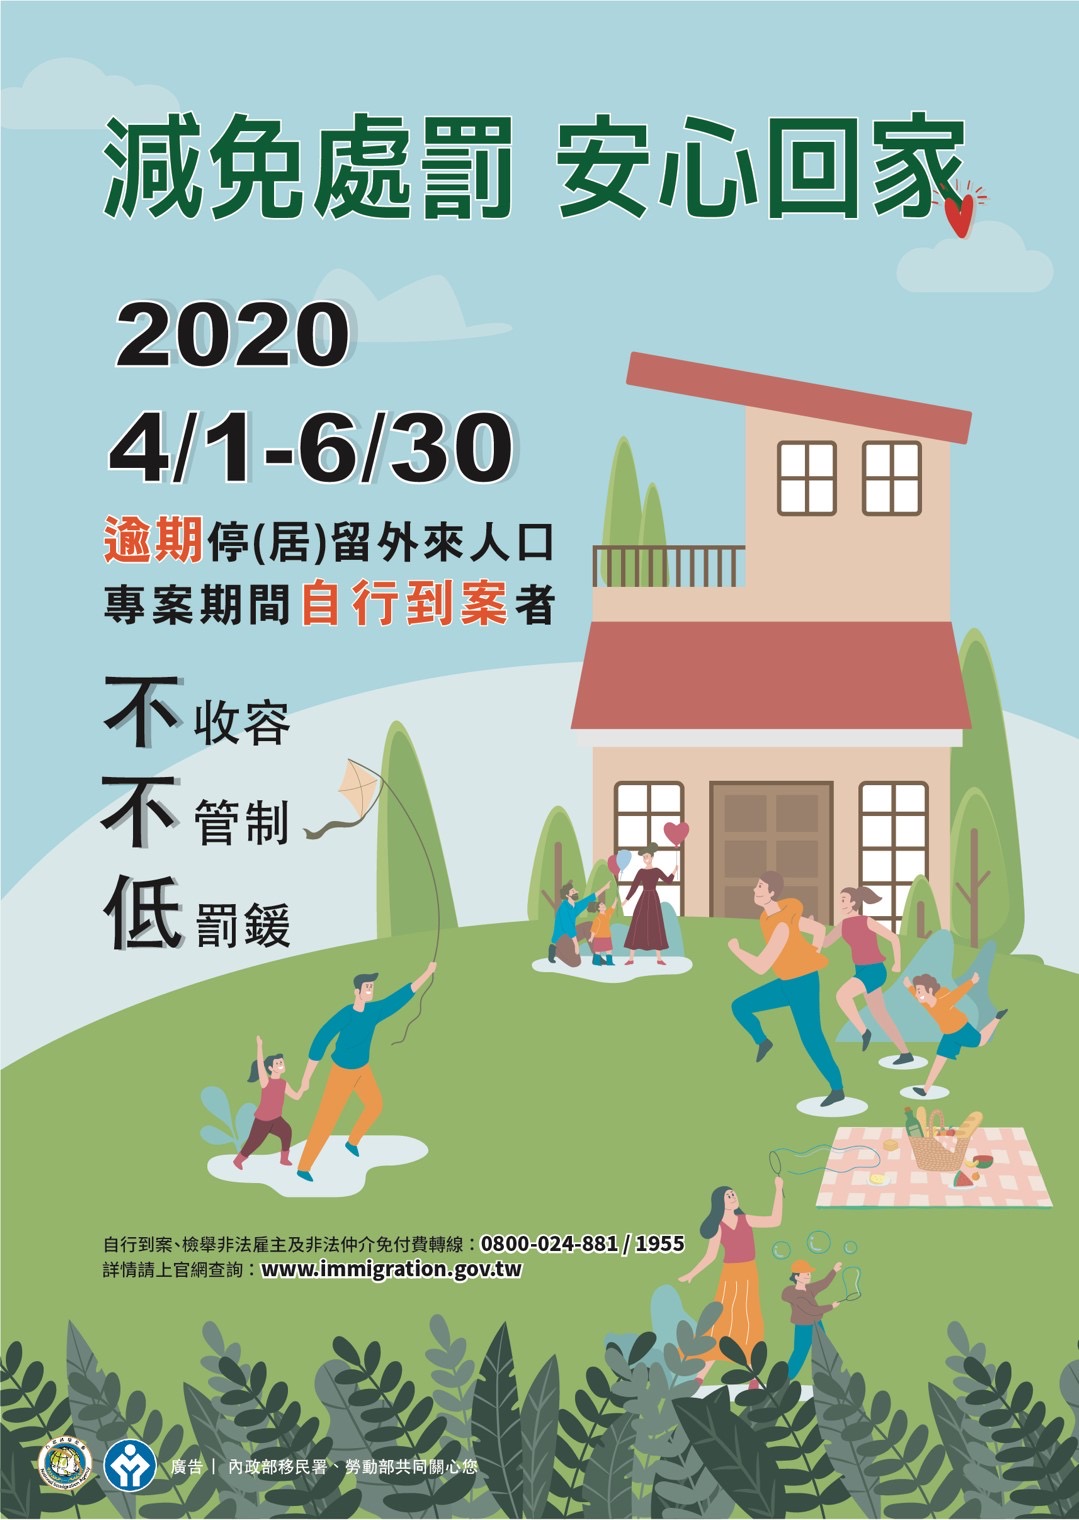 臺南市政府社會局 內政部移民署 擴大逾期停 居 留外來人口自行到案 專案 109年4月1日至同年6月30日期間